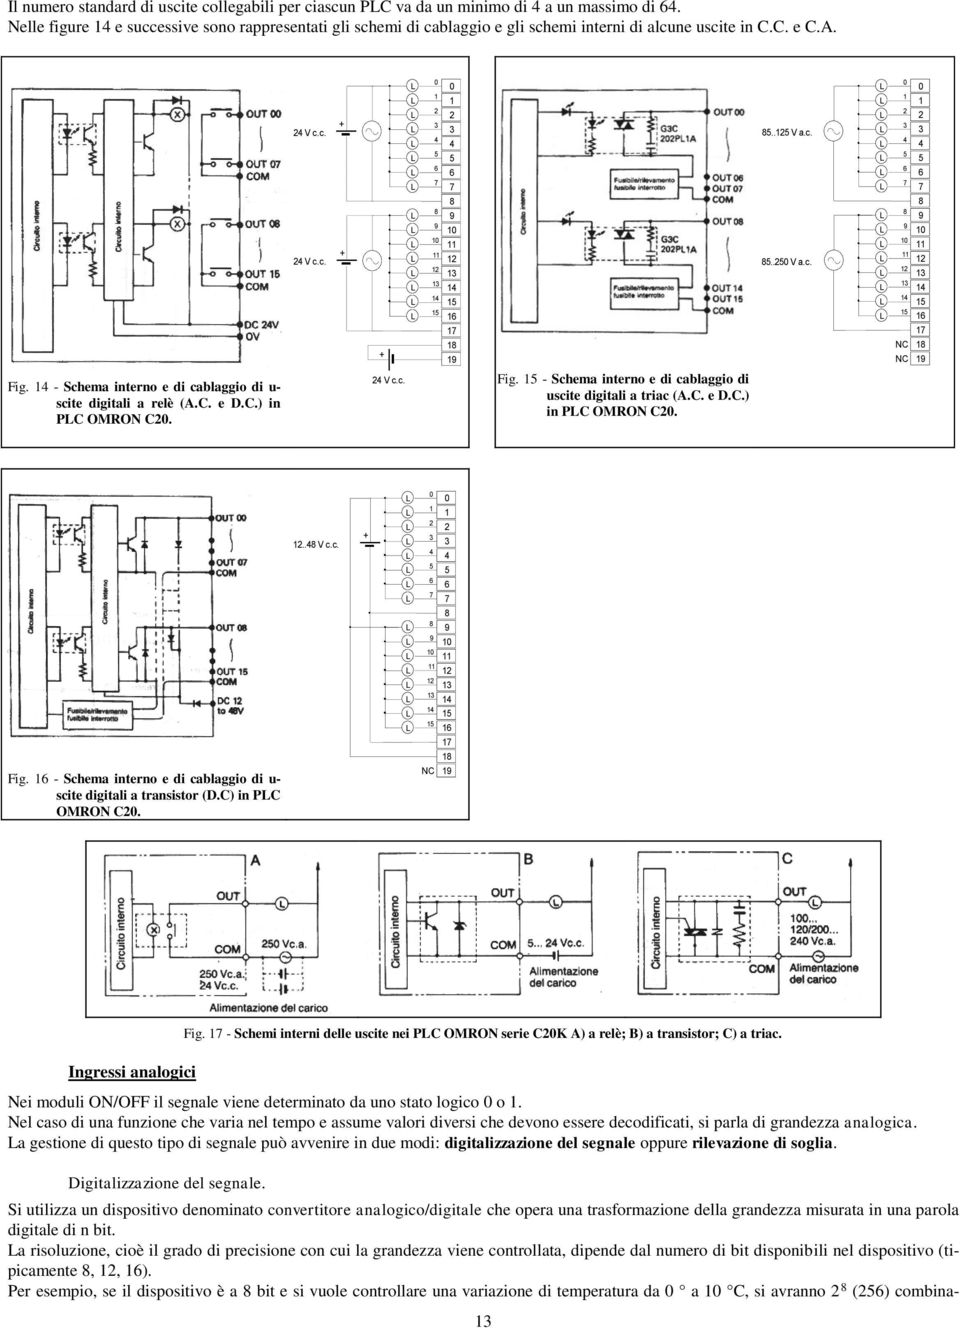 - Schema interno e di cablaggio di u- scite digitali a relè (A.C. e D.C.) in PC OMRON C. V c.c. Fig. - Schema interno e di cablaggio di uscite digitali a triac (A.C. e D.C.) in PC OMRON C. Fig. - Schema interno e di cablaggio di u- scite digitali a transistor (D.